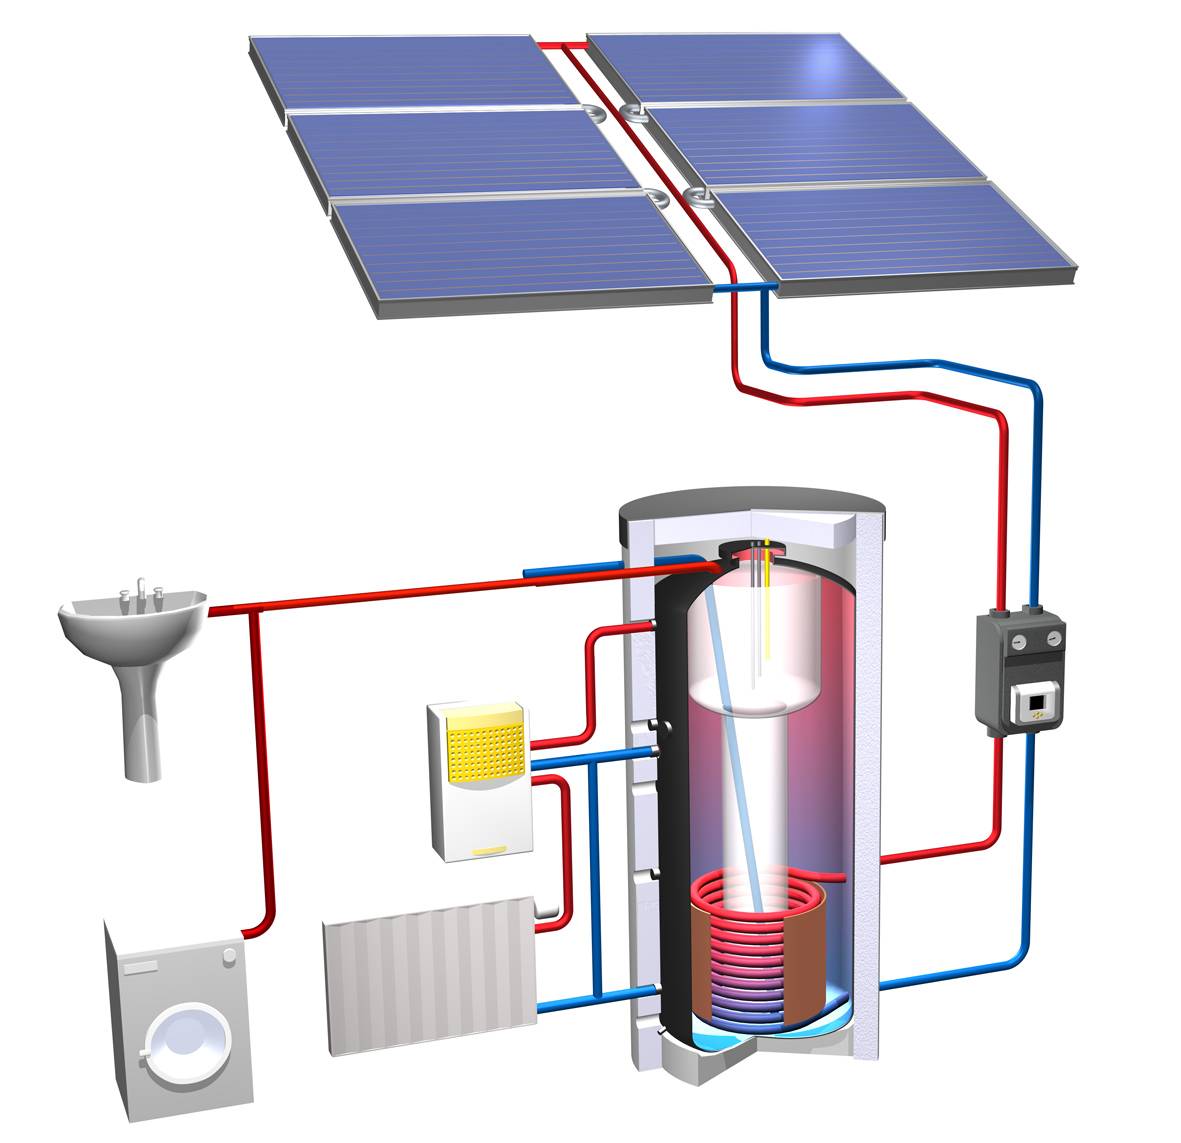 Принцип работы и устройство накопительного водонагревателя (бойлера)